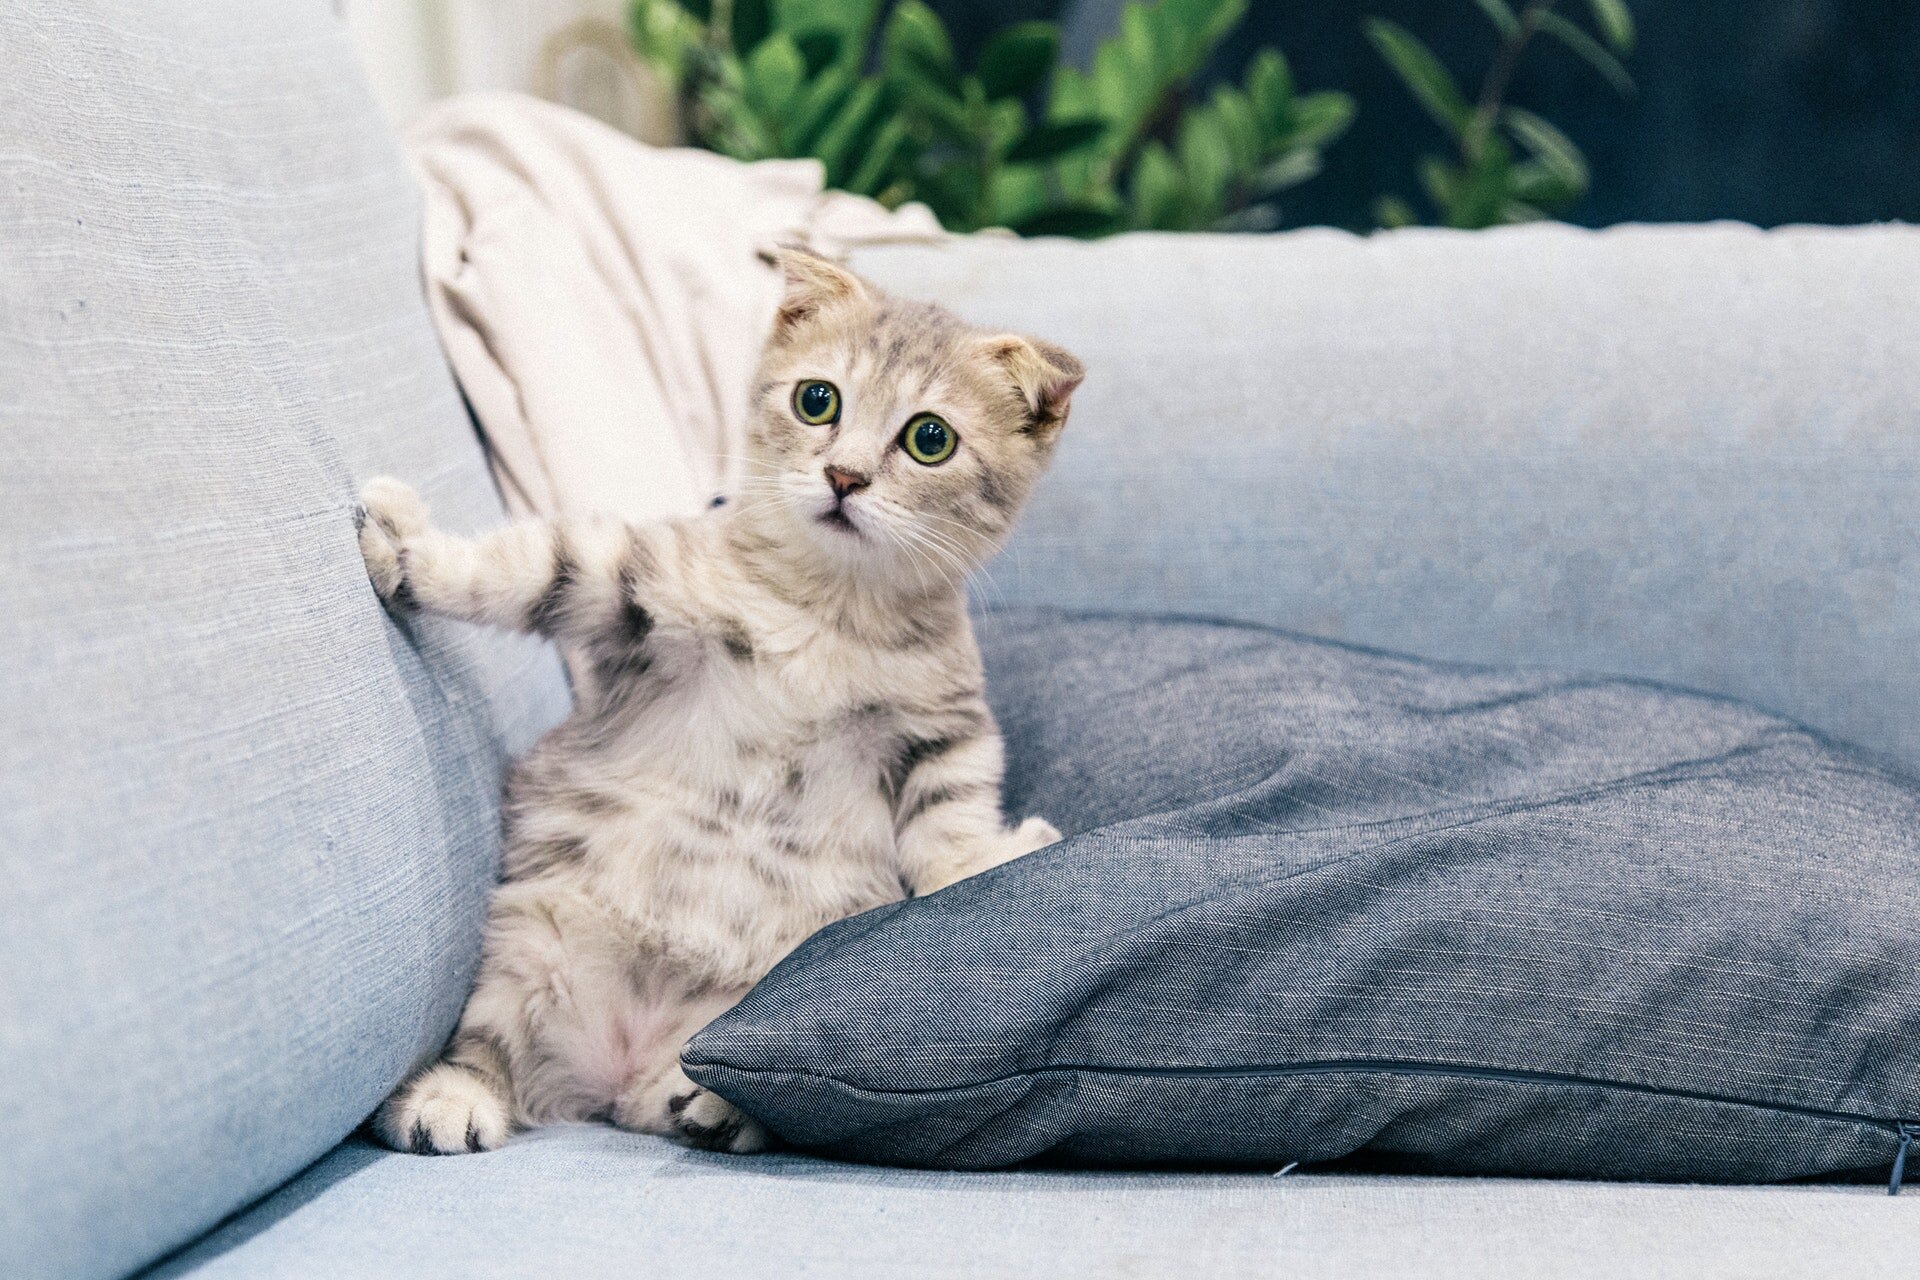 koltuğa yaslanmış gözbebekleri büyümüş yavru kedi